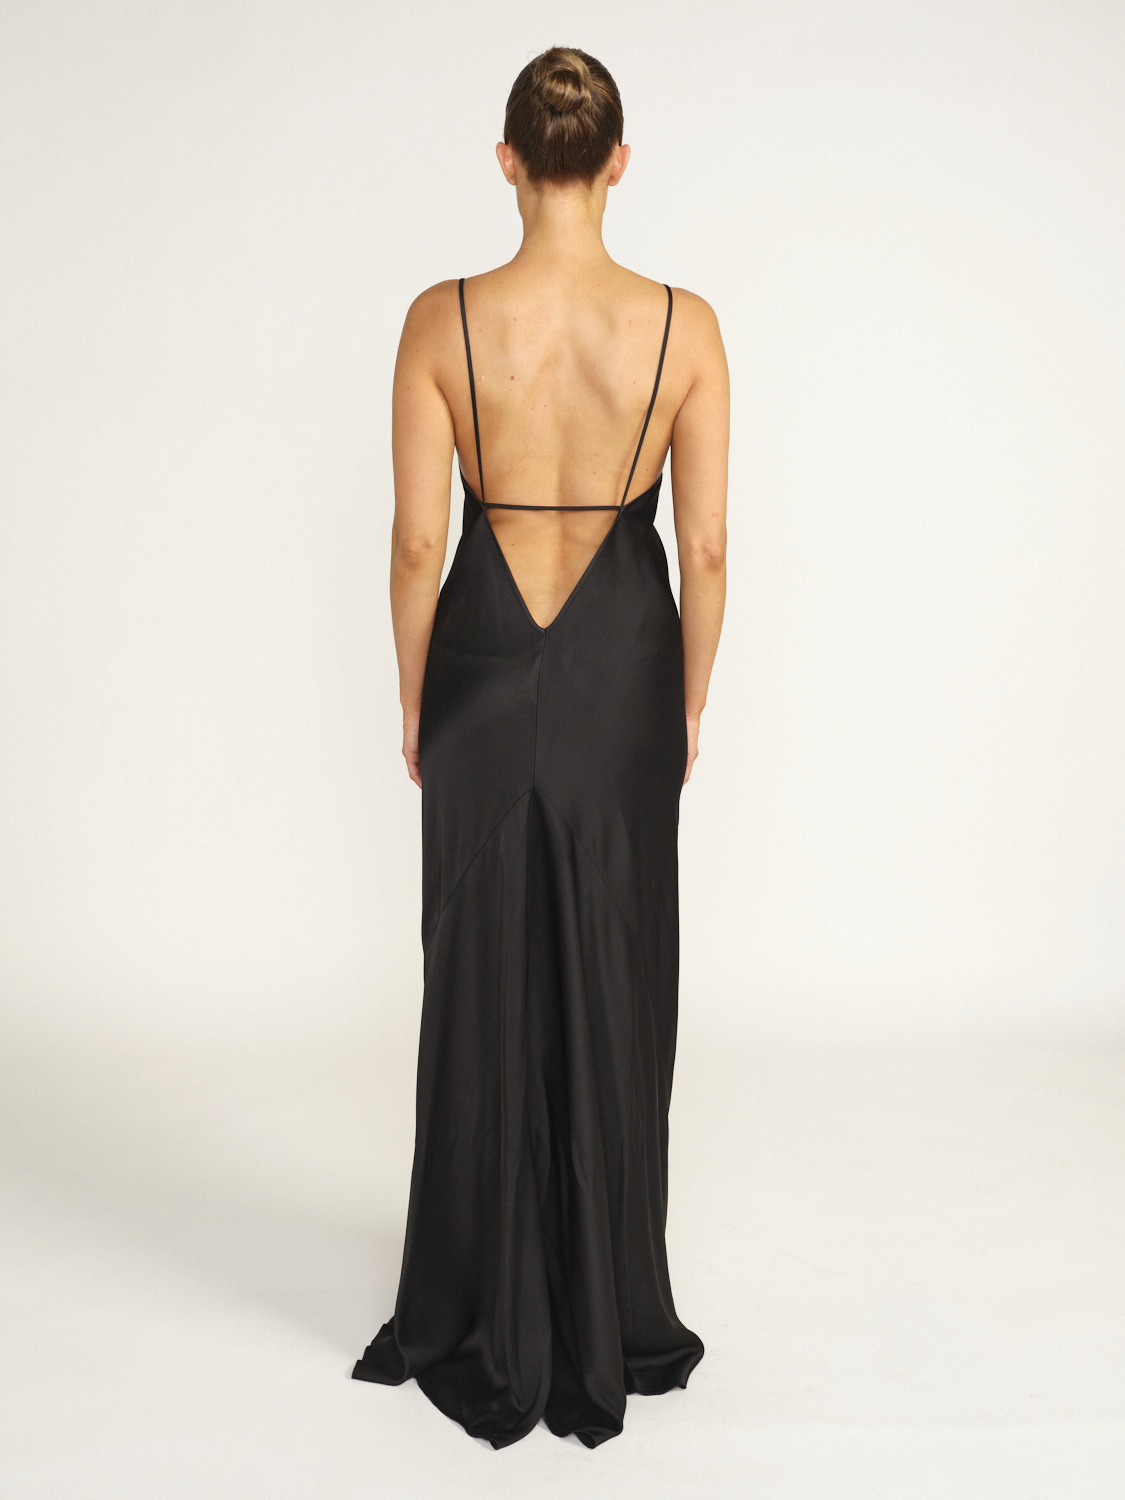 Victoria Beckham Floor Length Cami Dress – Bodenlanges Kleid aus fließendem Stoff schwarz 36